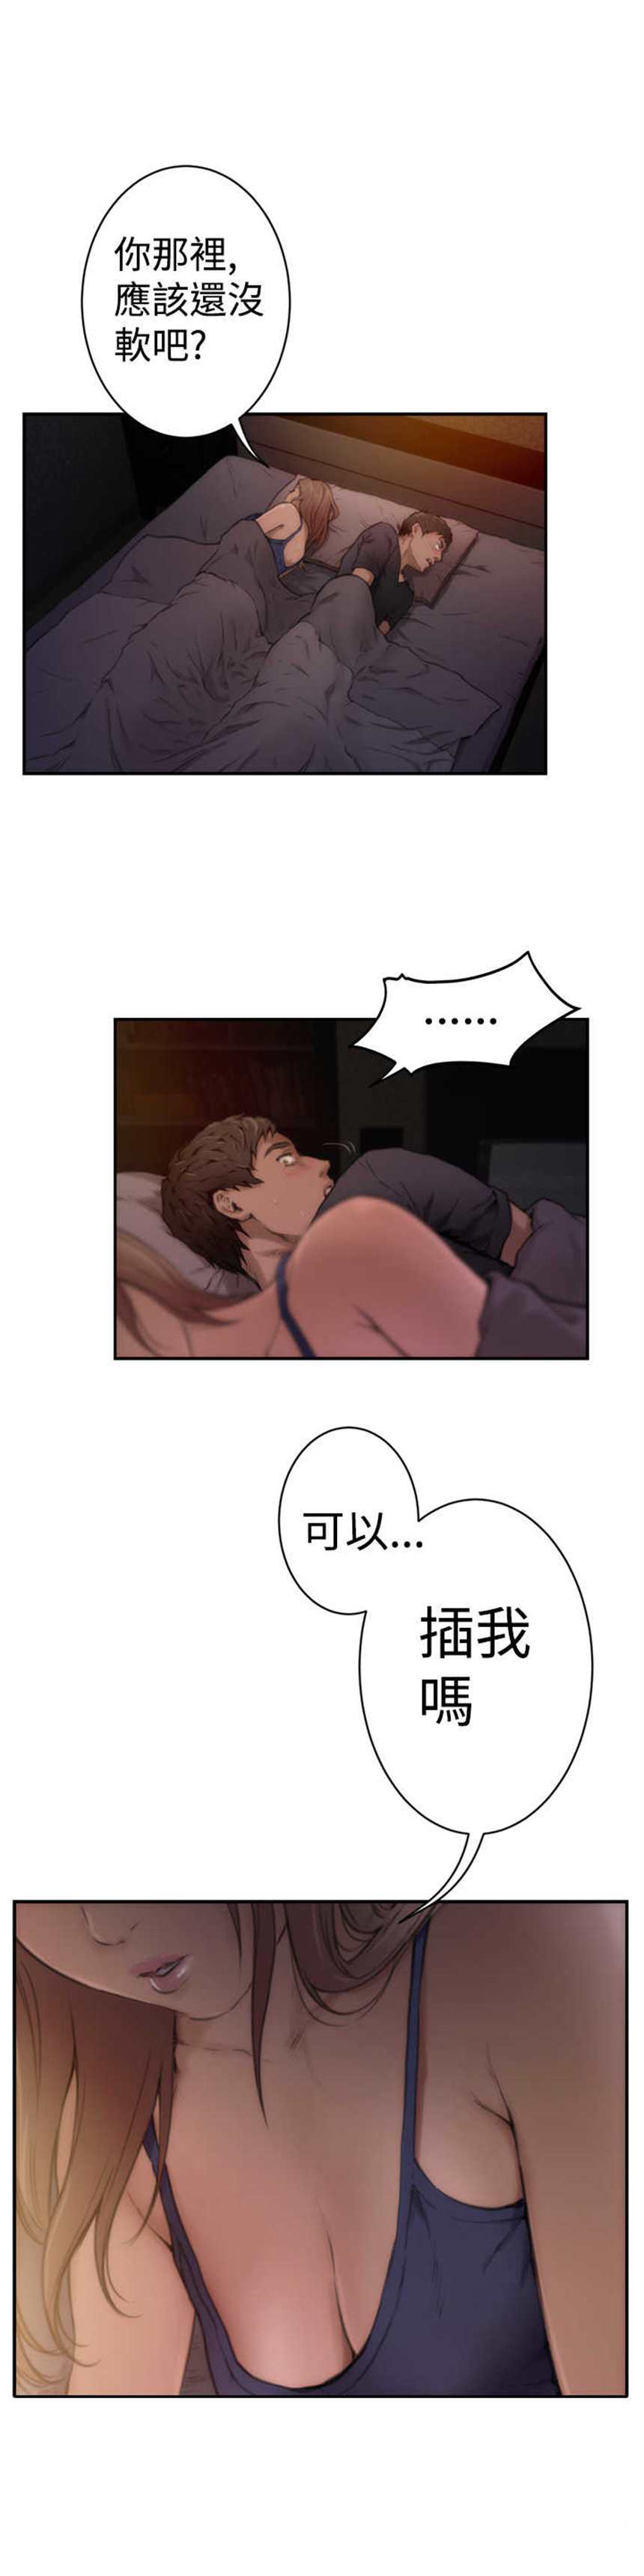 韩国漫画《爱上男闺蜜》第5话(点击浏览下一张趣图)